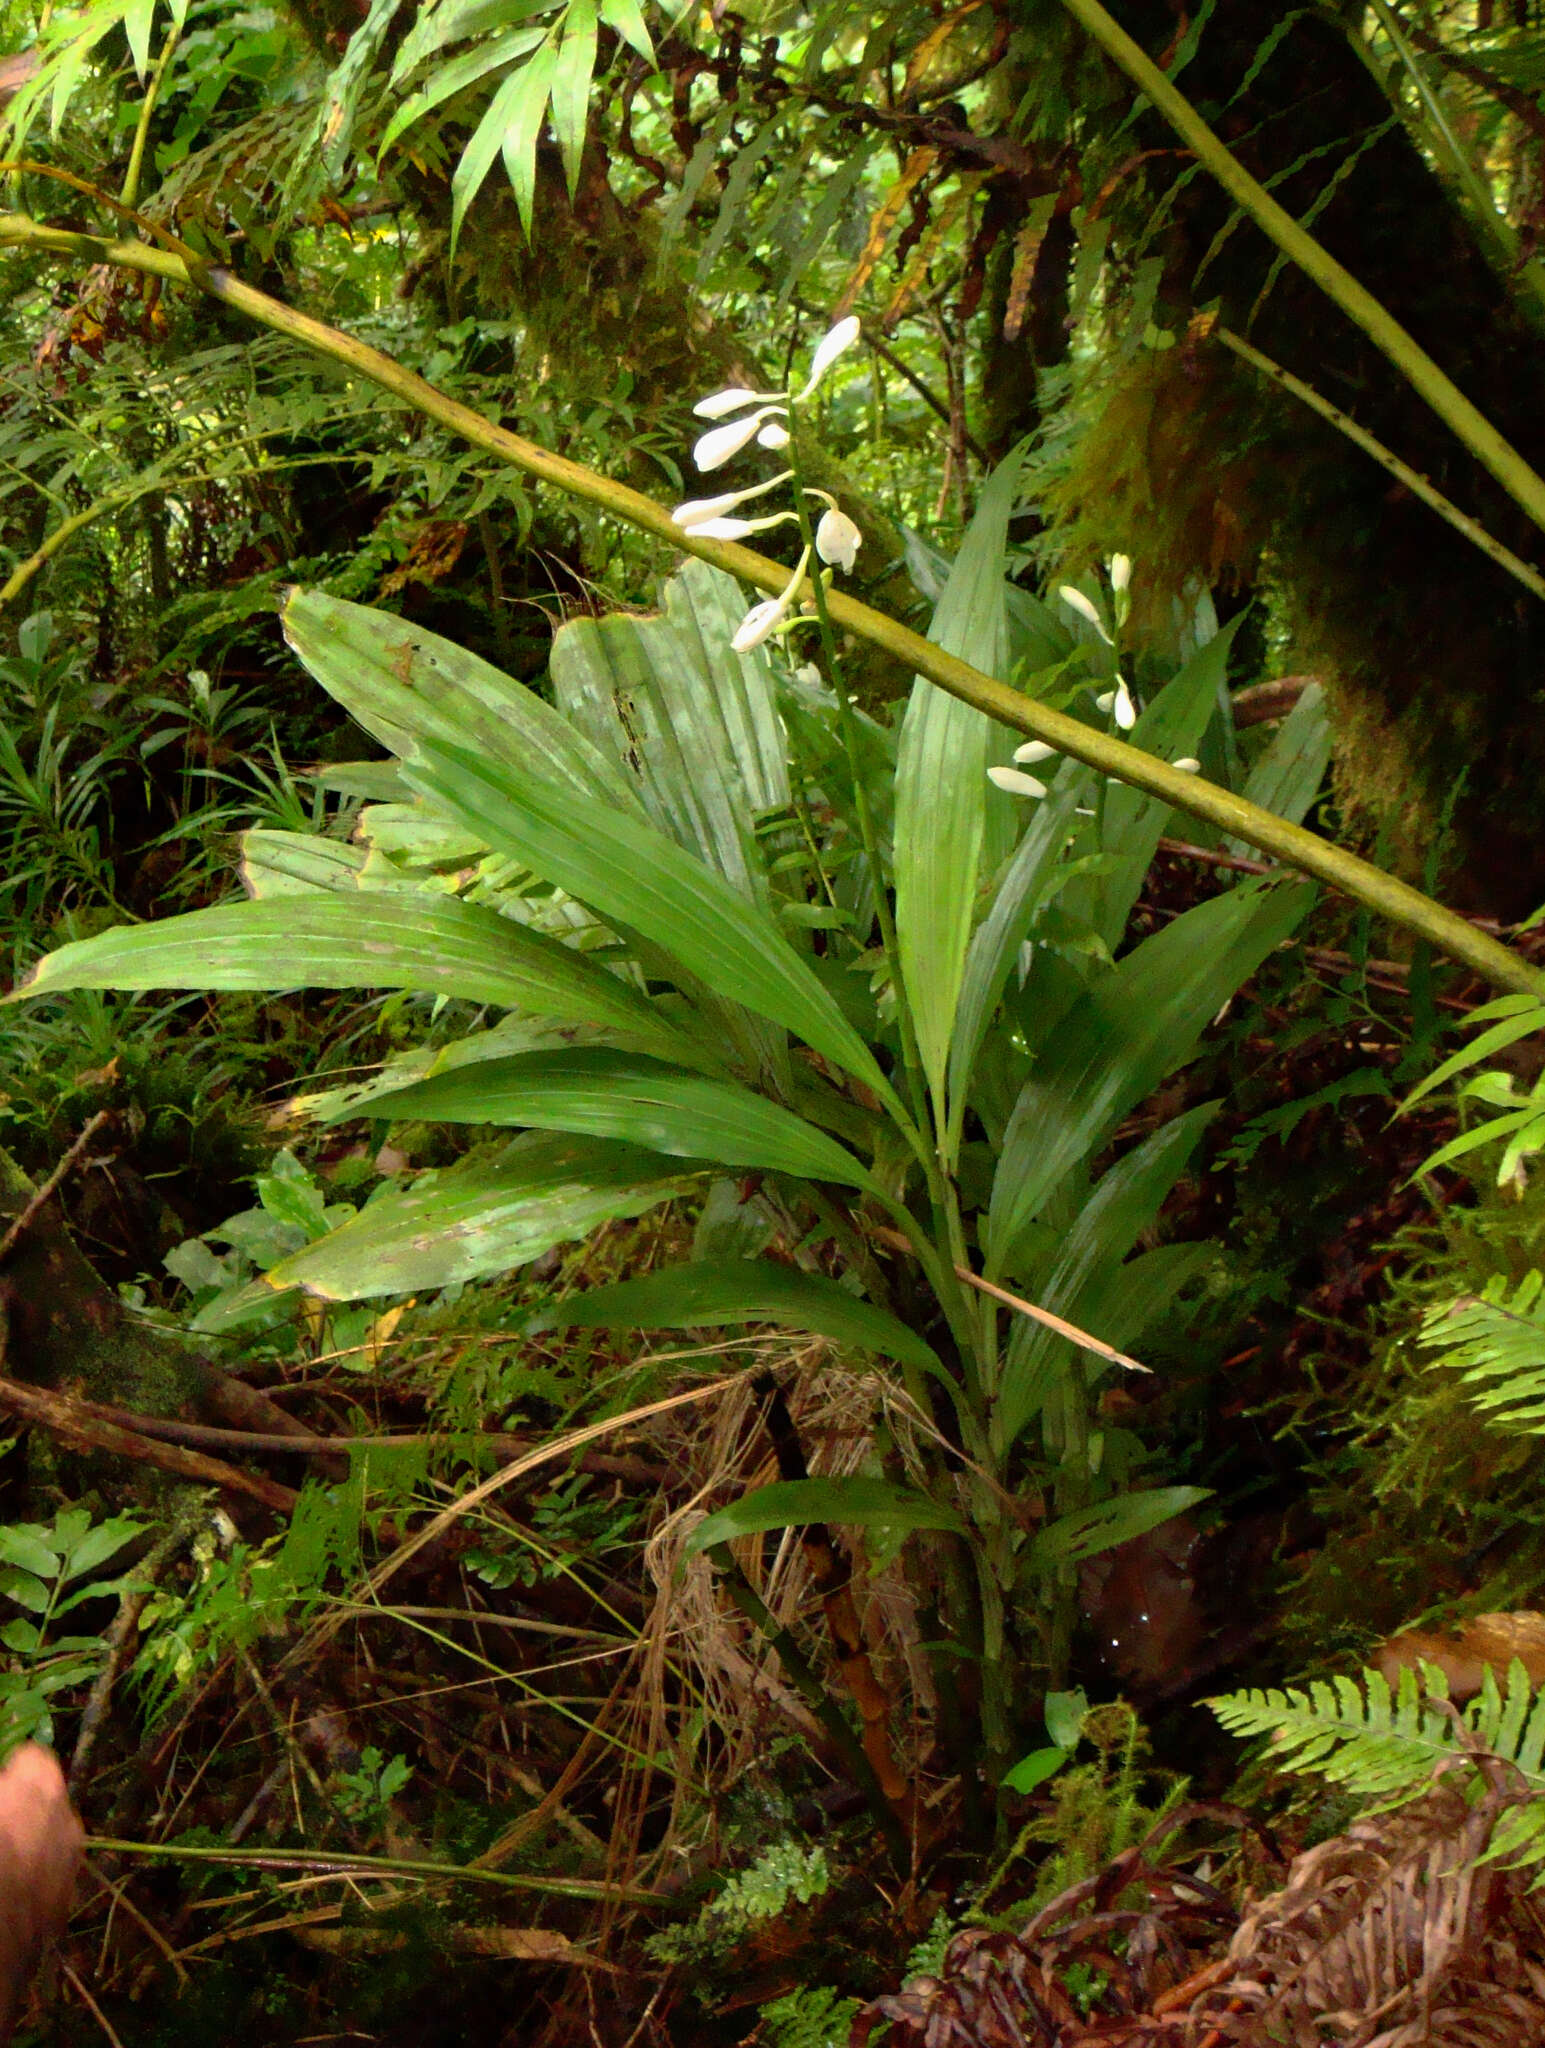 Image of Arnhem Land swamp orchid